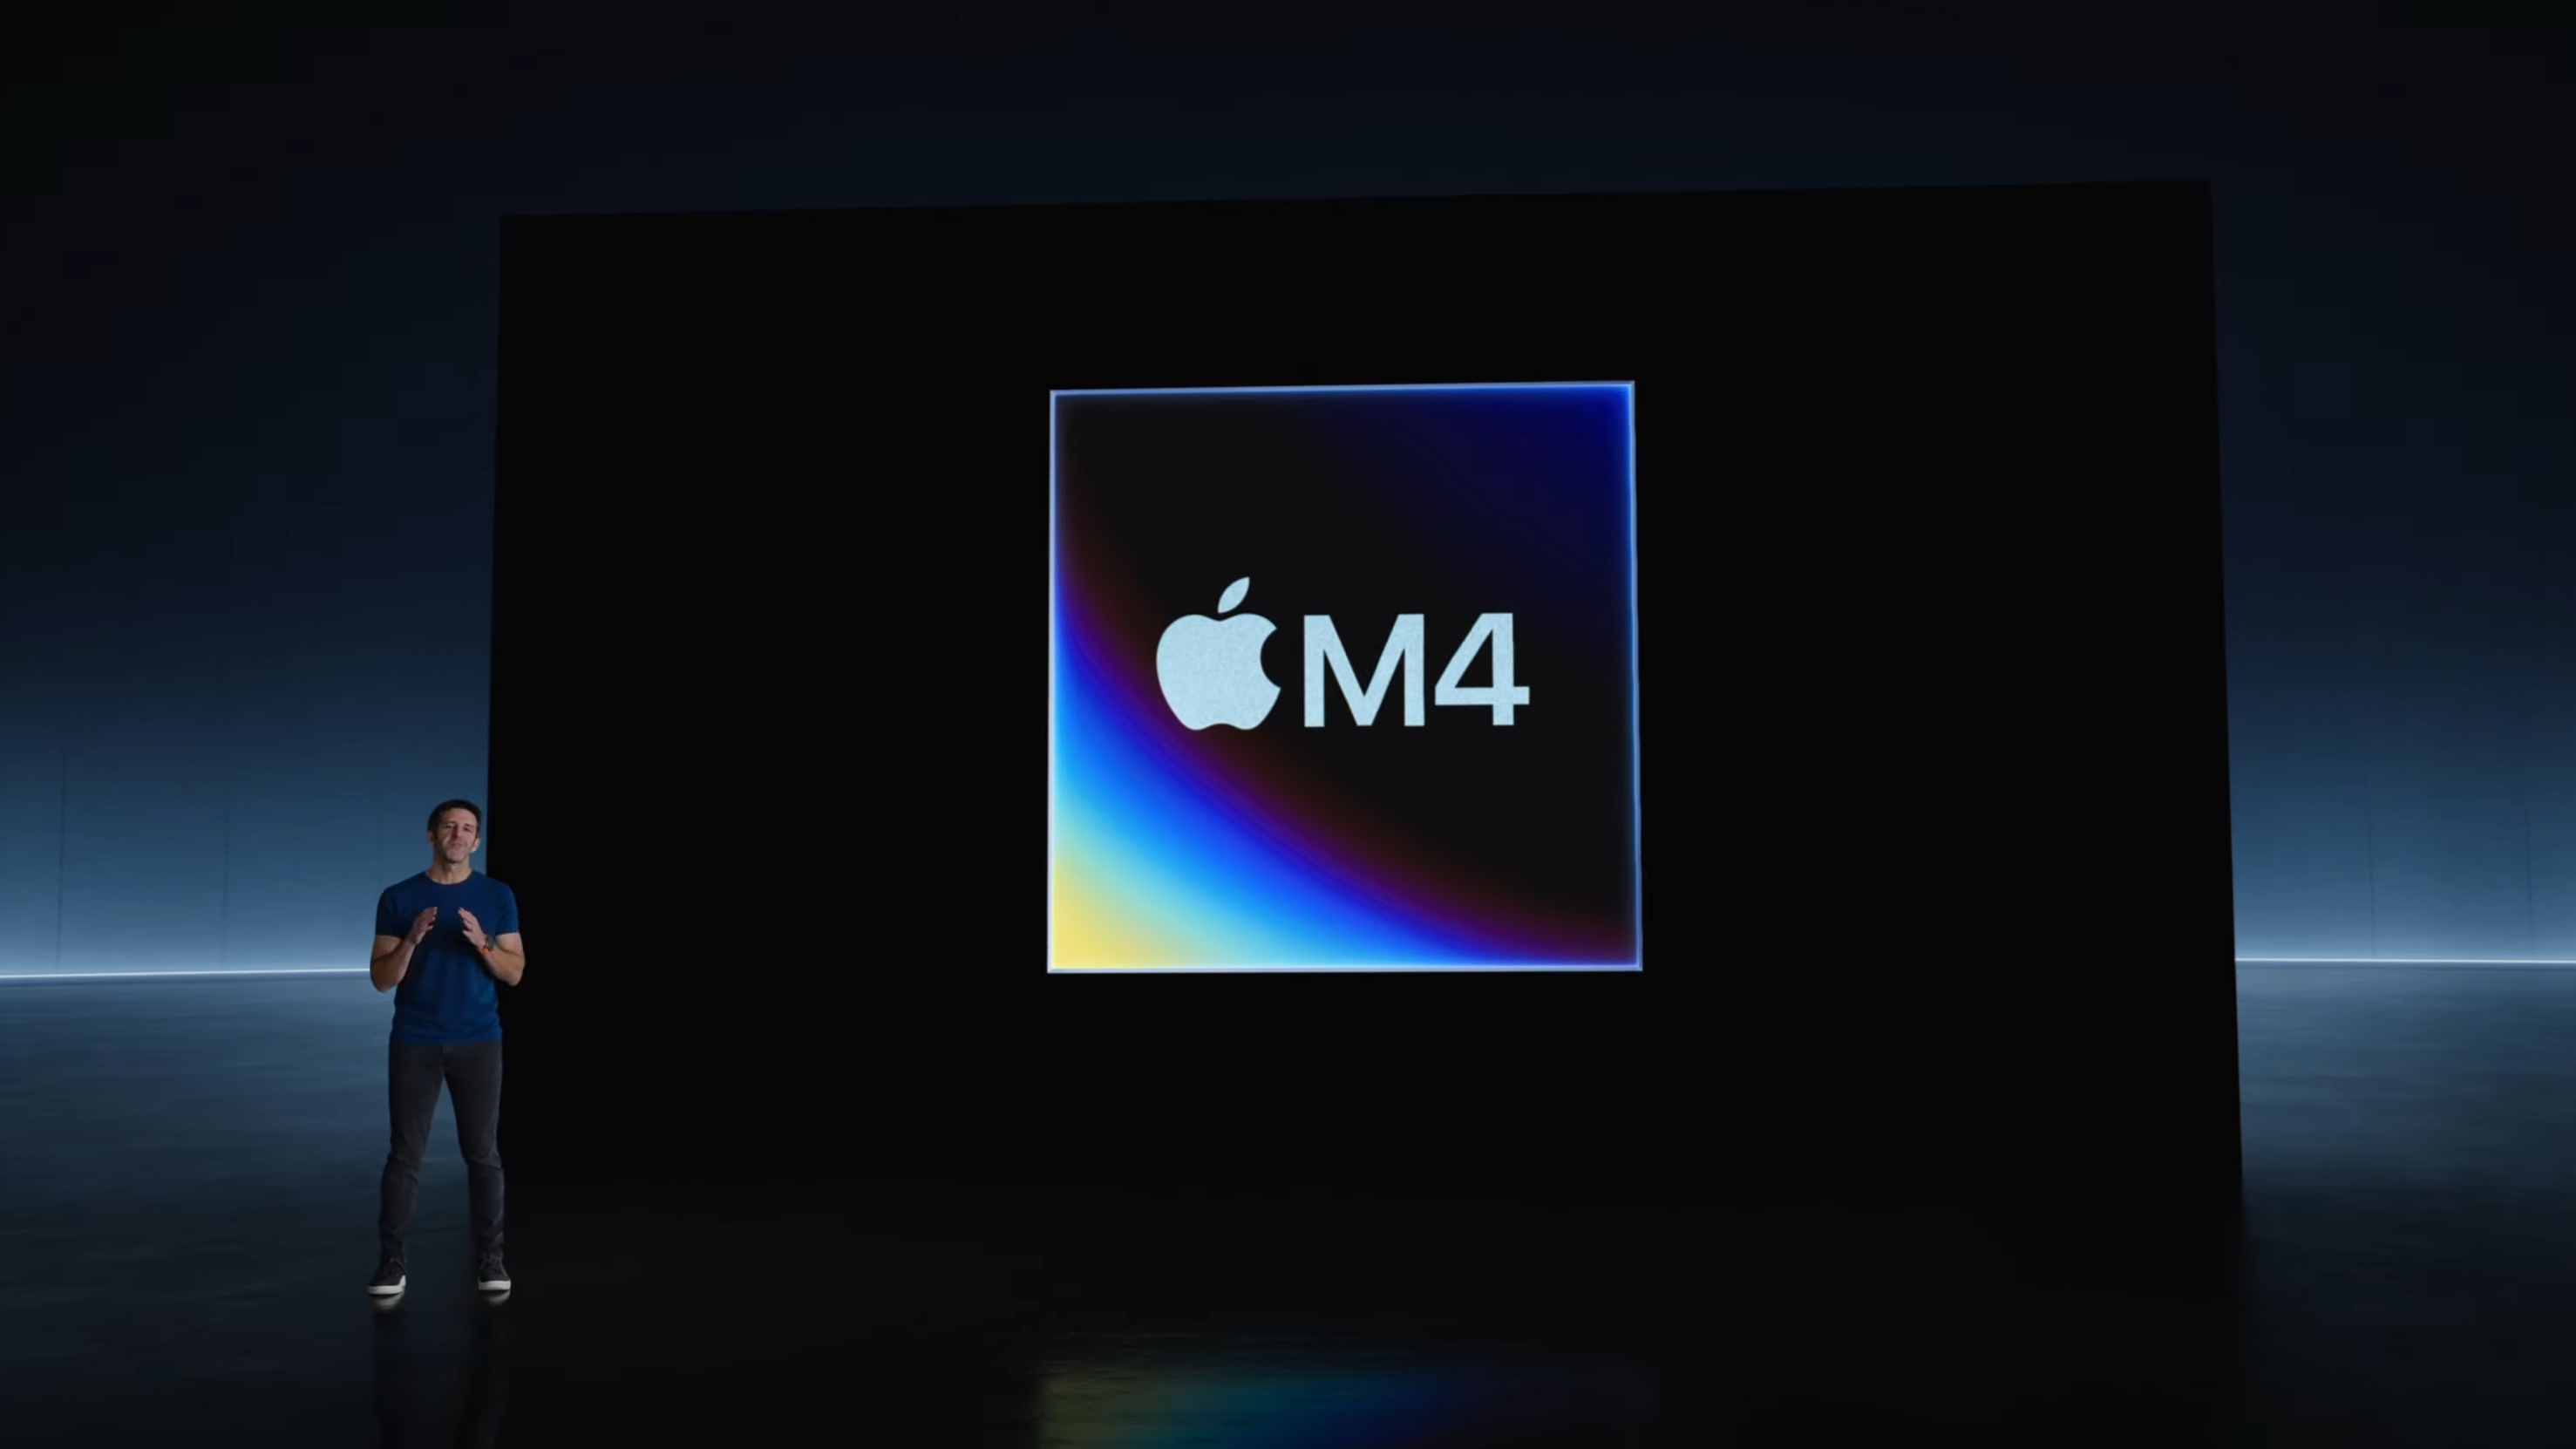 Apple M4 chip announcement